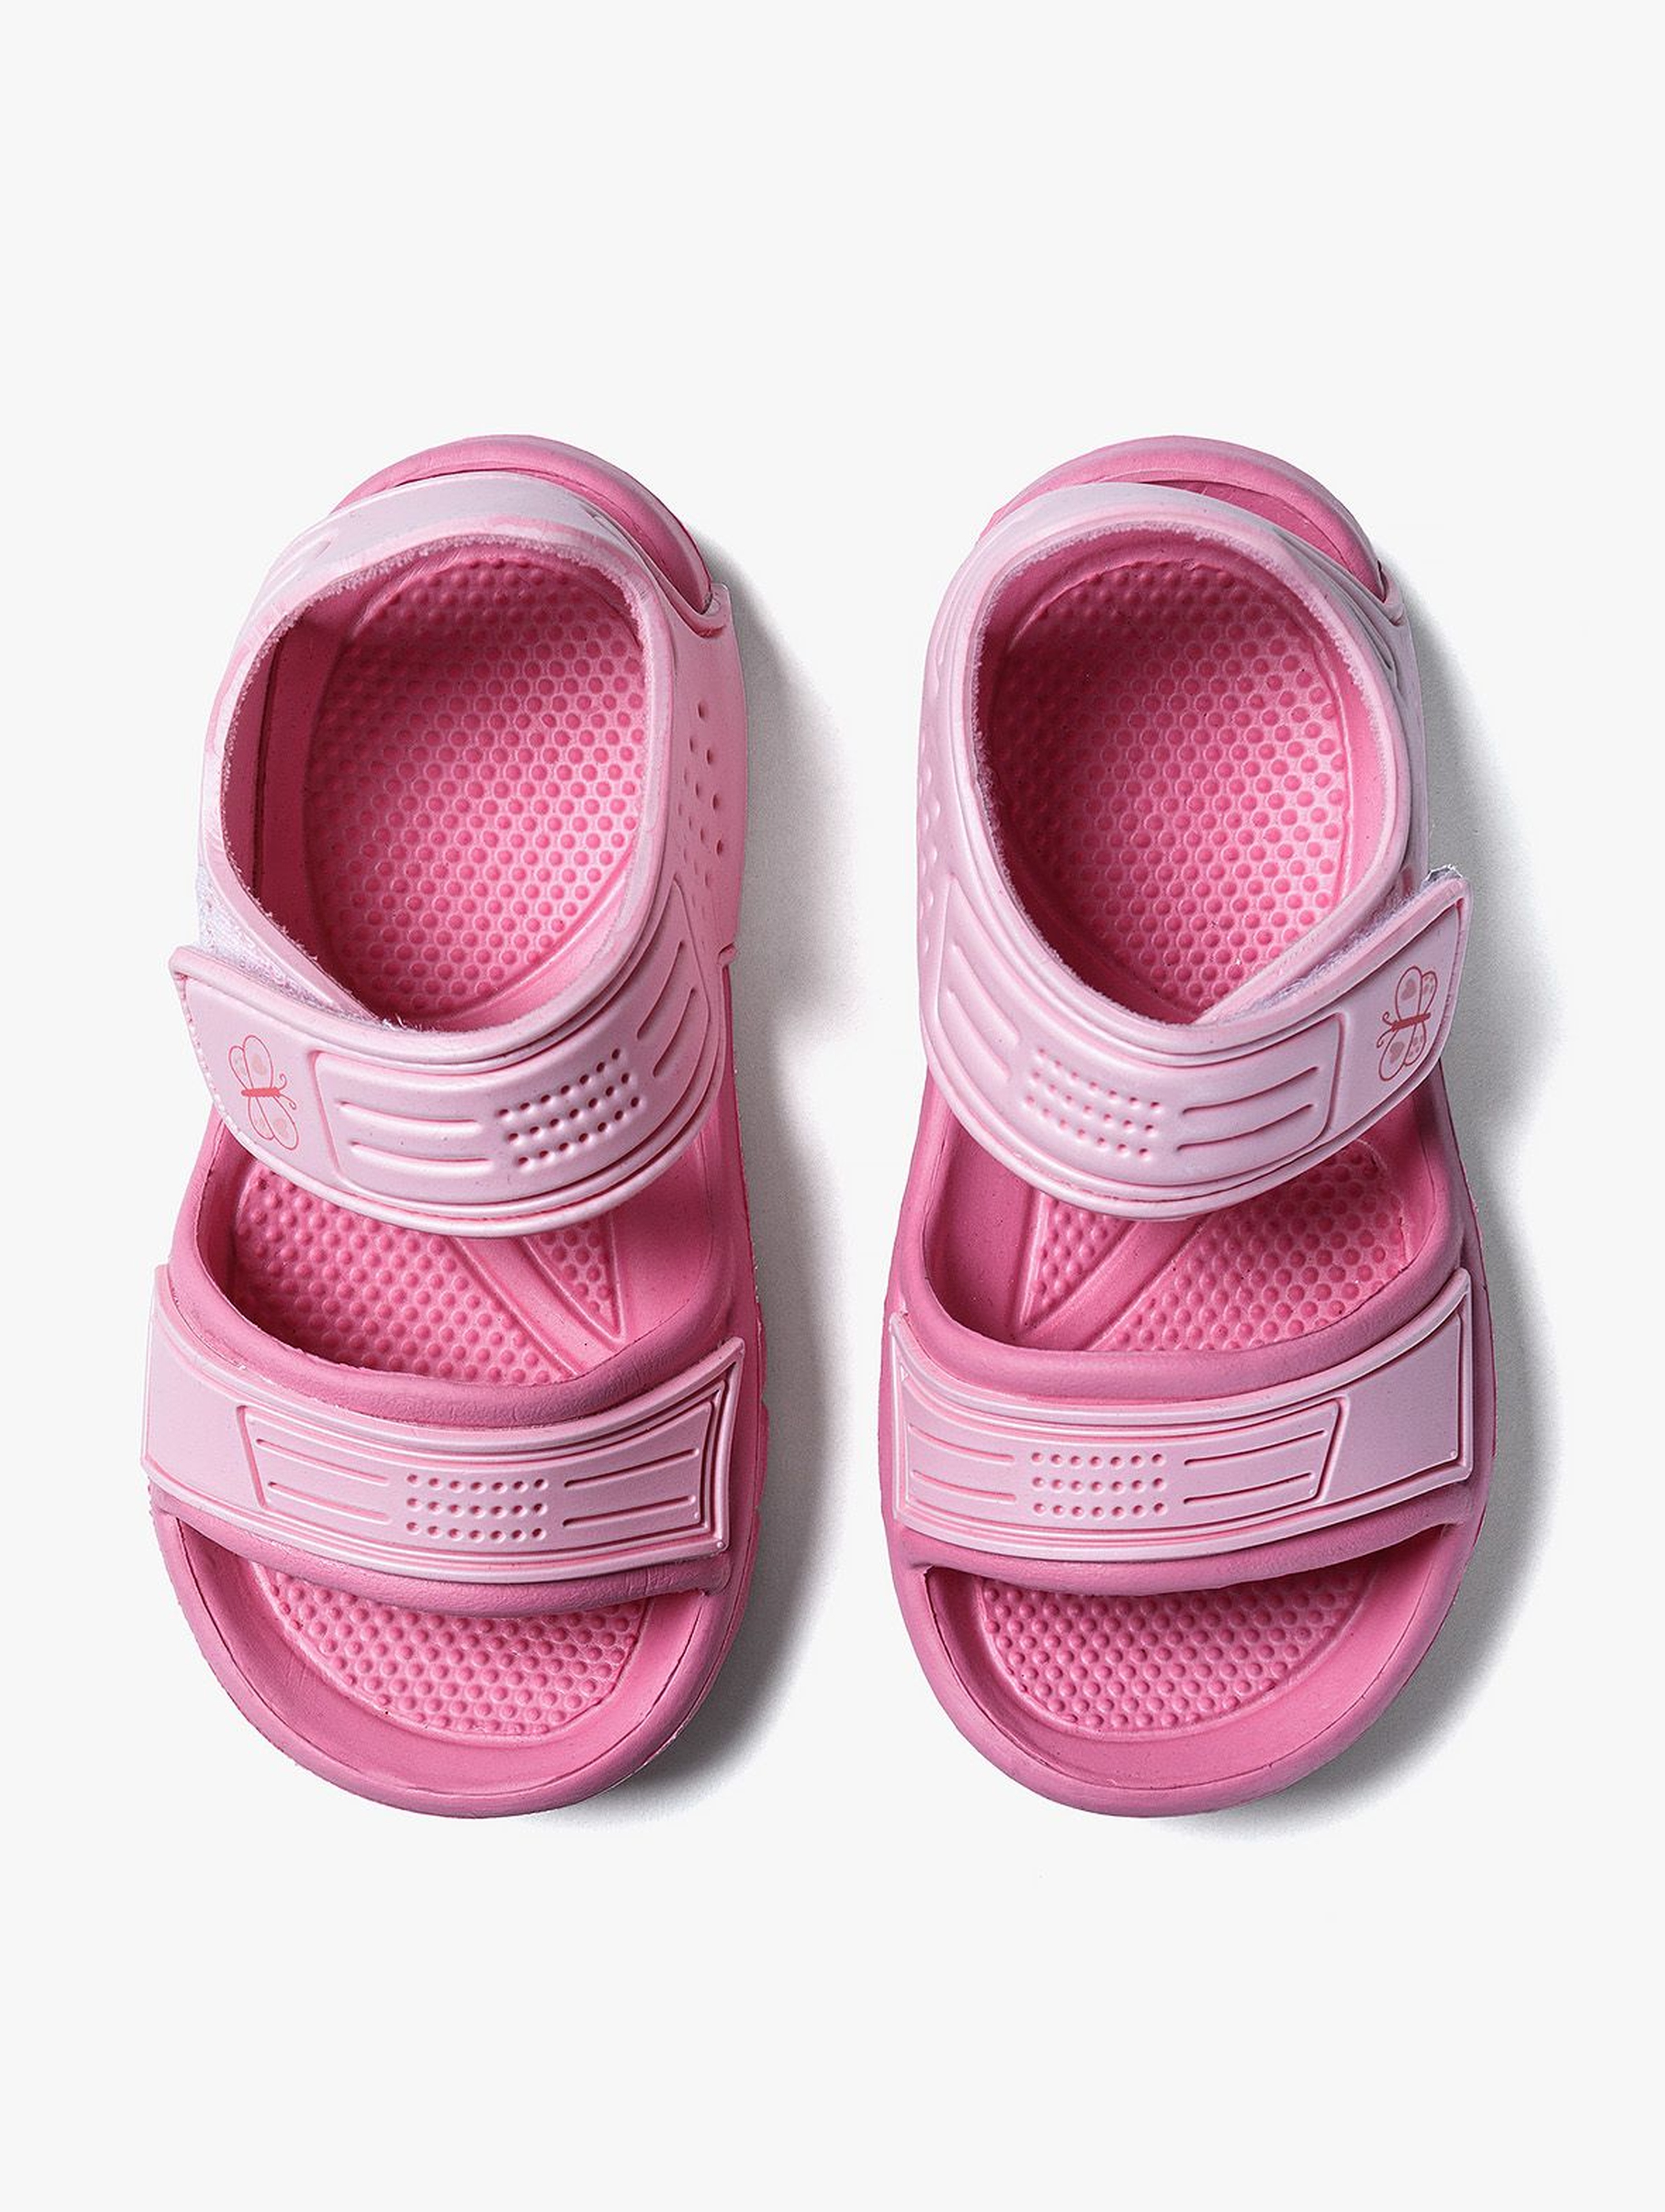 Różowe sandały dla dziewczynki